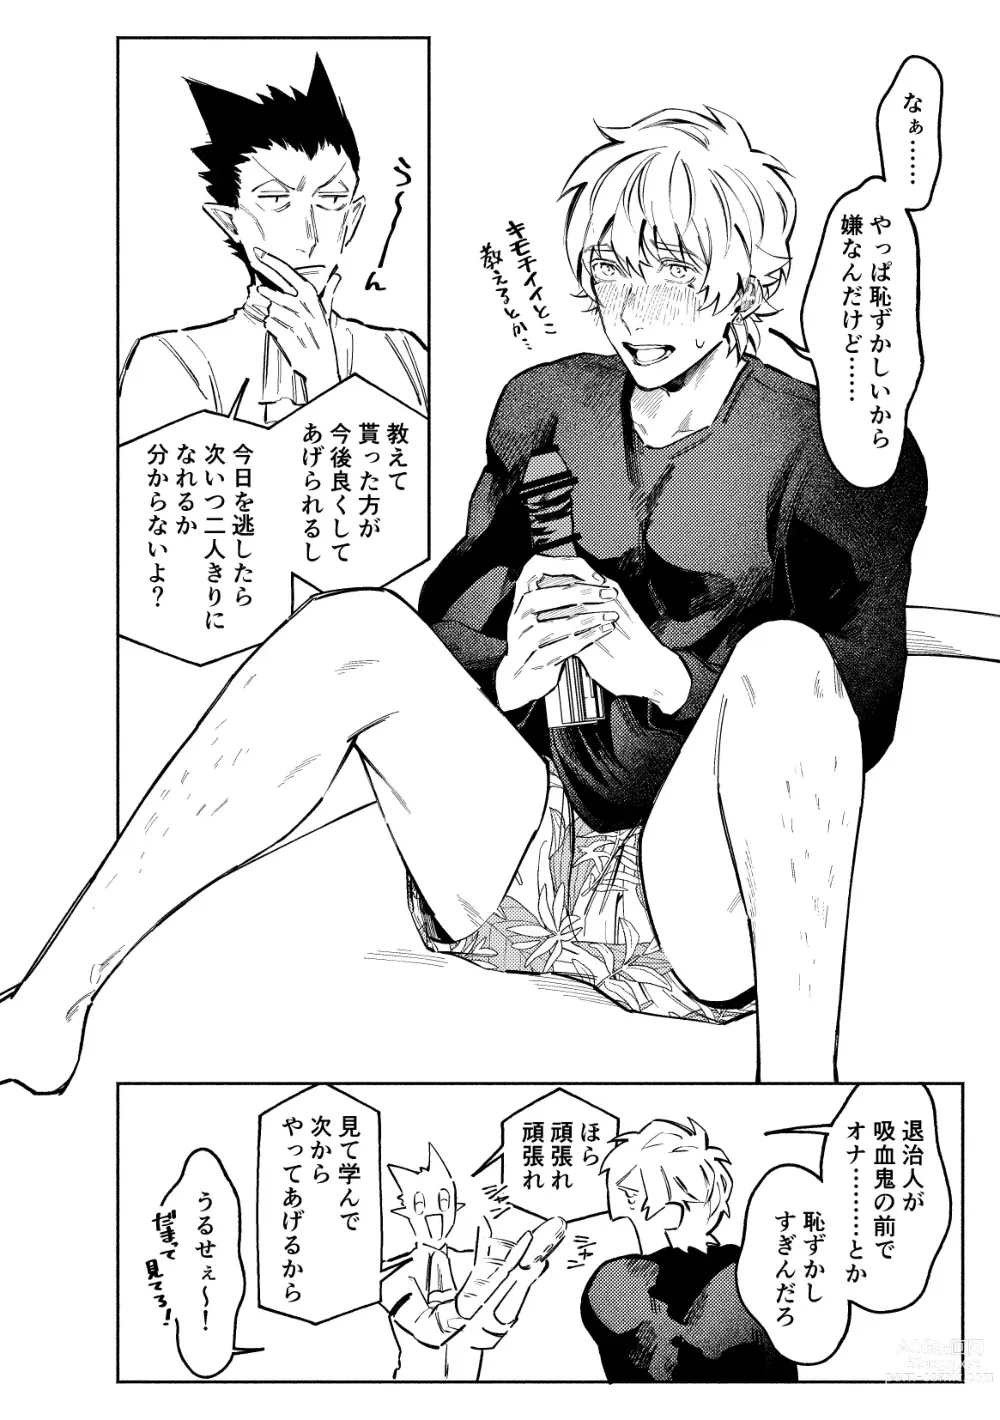 Page 8 of doujinshi 1stDRxxx